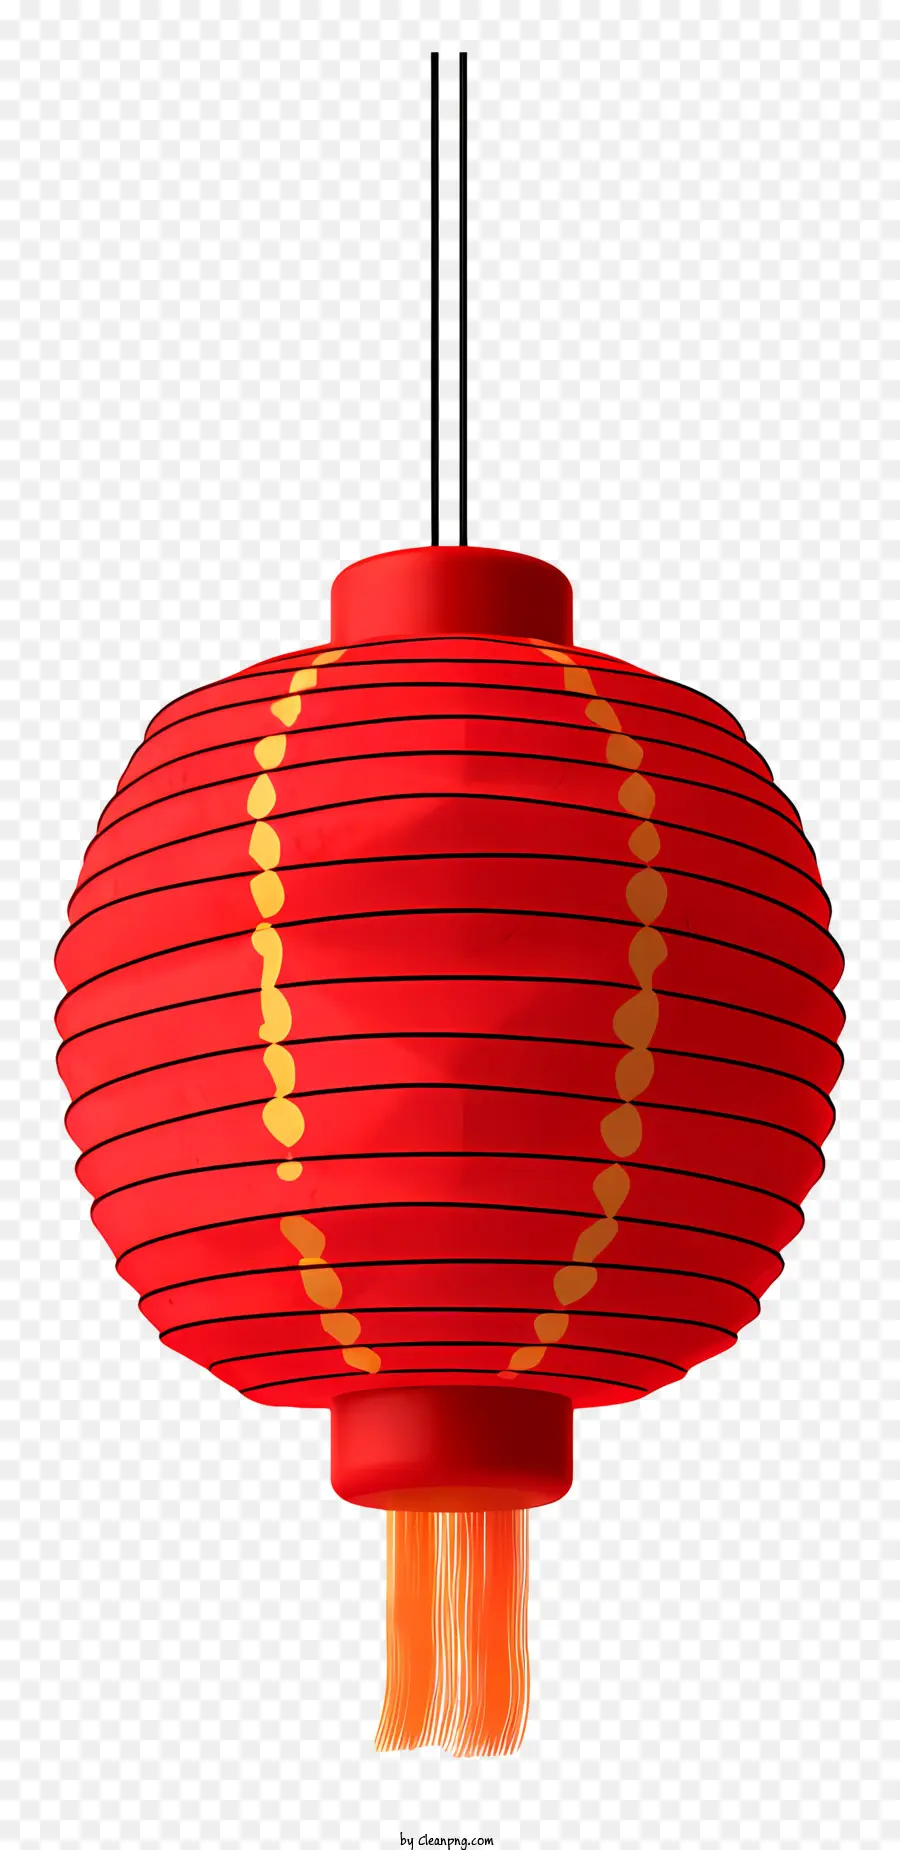 chinesische Laterne - Rote Laterne mit Golddesign hängt an Schwarz hängen